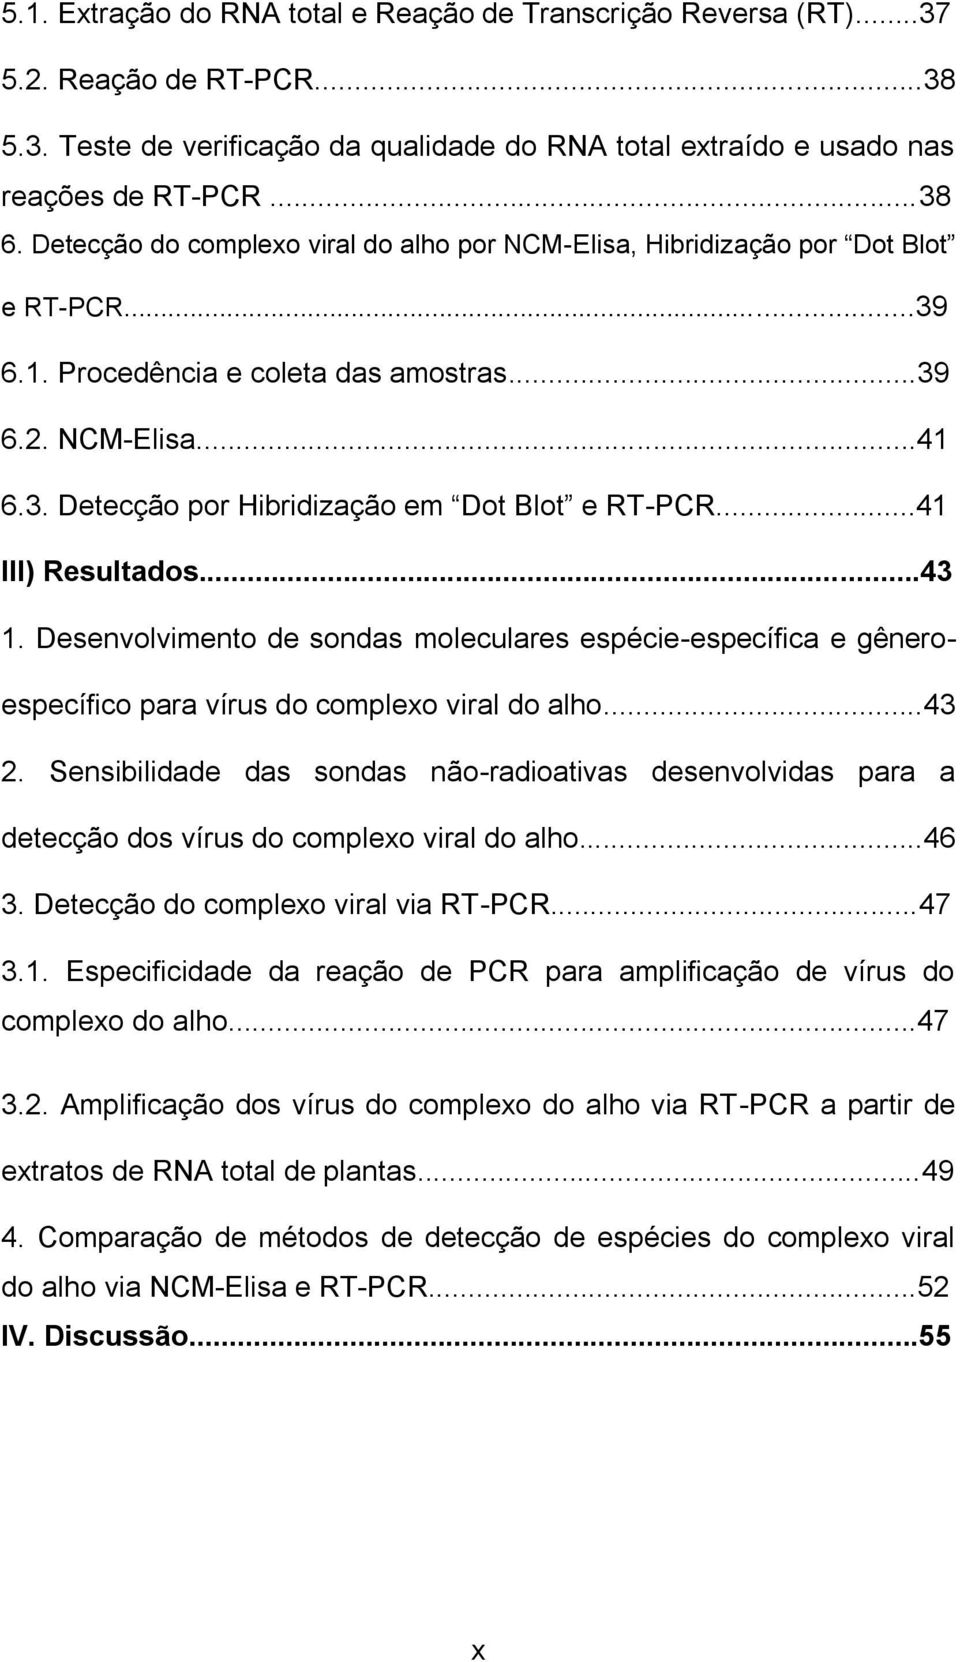 ..41 III) Resultados...43 1. Desenvolvimento de sondas moleculares espécie-específica e gêneroespecífico para vírus do complexo viral do alho...43 2.